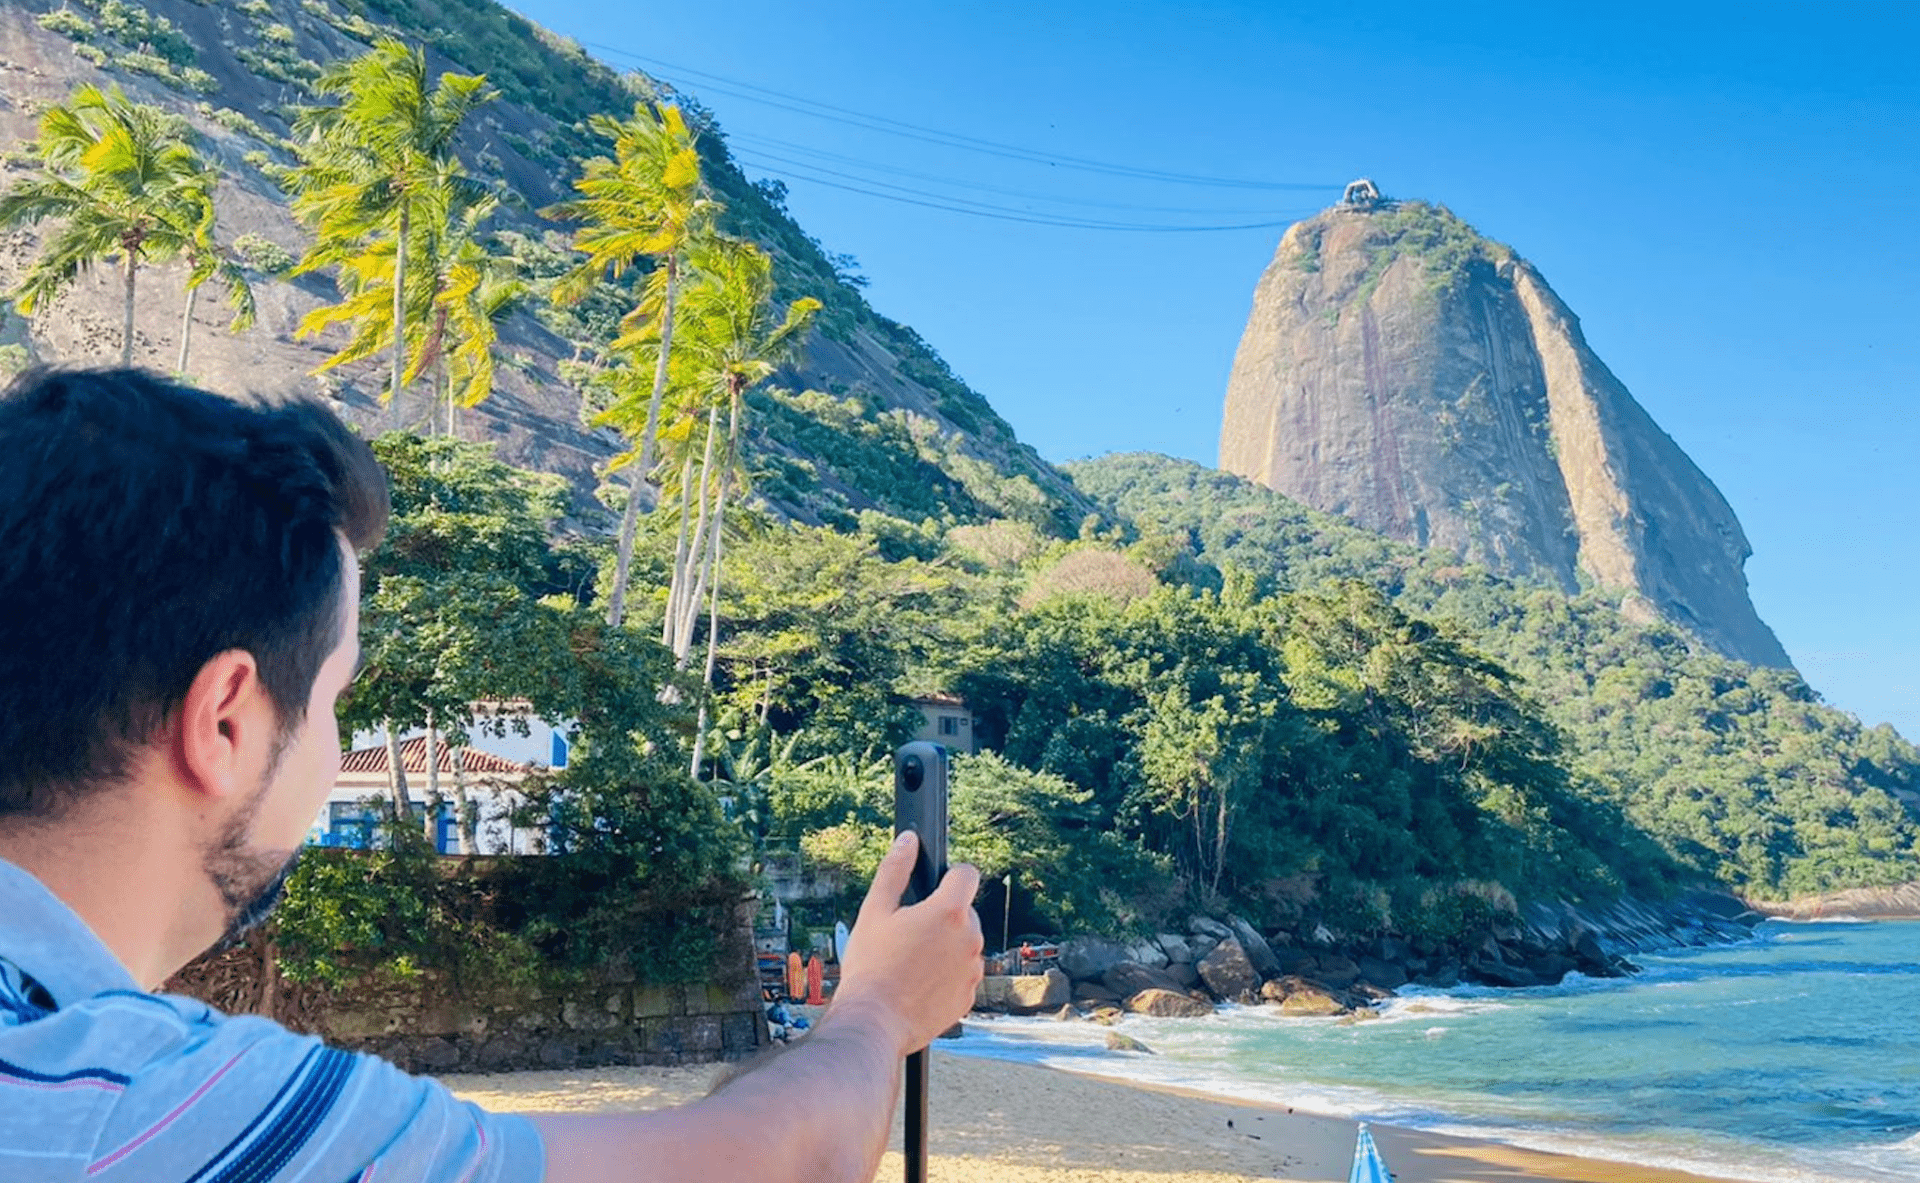 Dr. Saccomani captures Pão de Açúcar and Praia Vermelha with the 360 camera